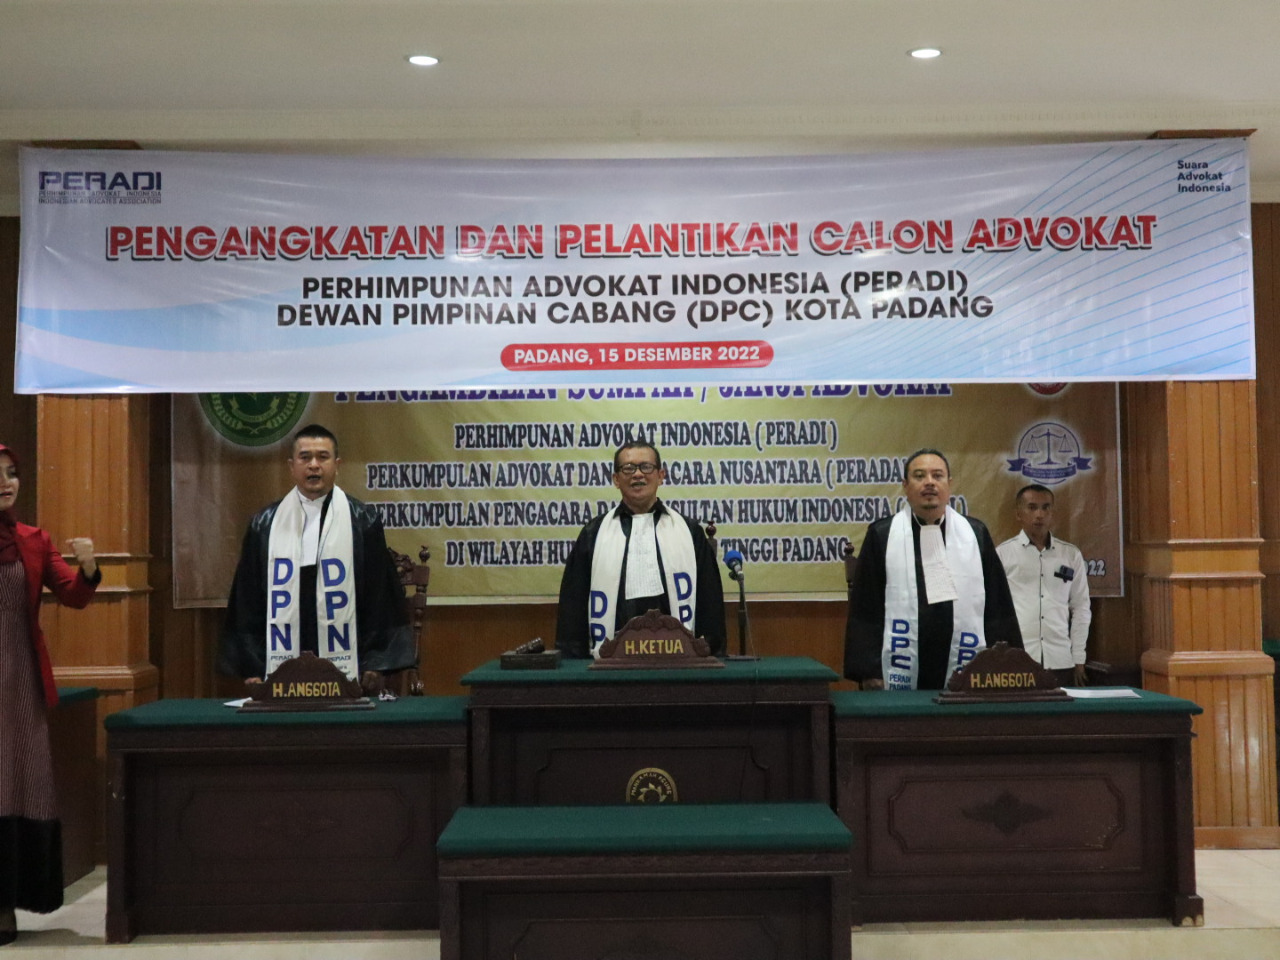 Pengangkatan dan Pelantikan Advokat DPC Padang di Pengadilan Tinggi Padang - 15 Desember 2022